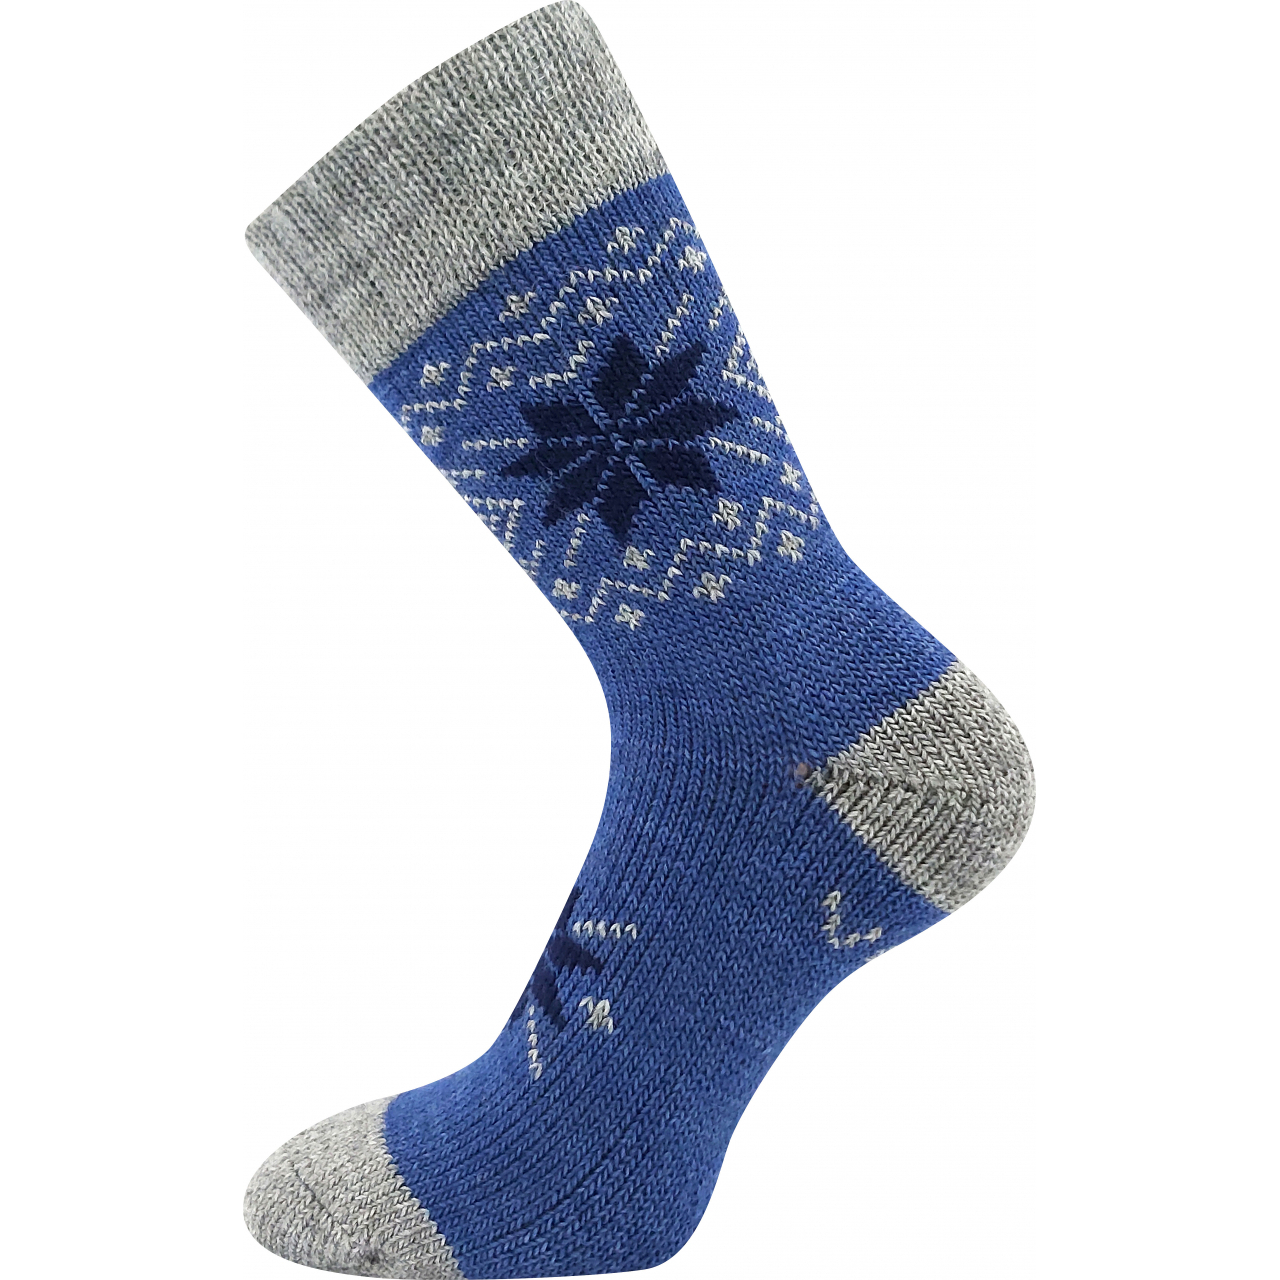 Ponožky unisex silné Voxx Alta - modré-šedé, 39-42